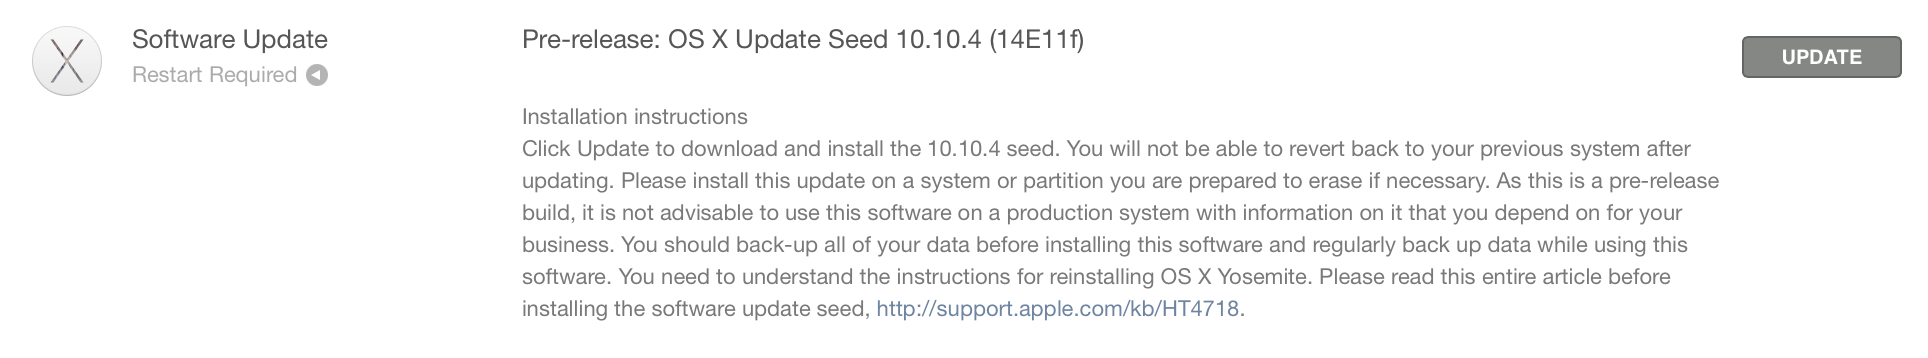 OS X 10.10.4 betaversion